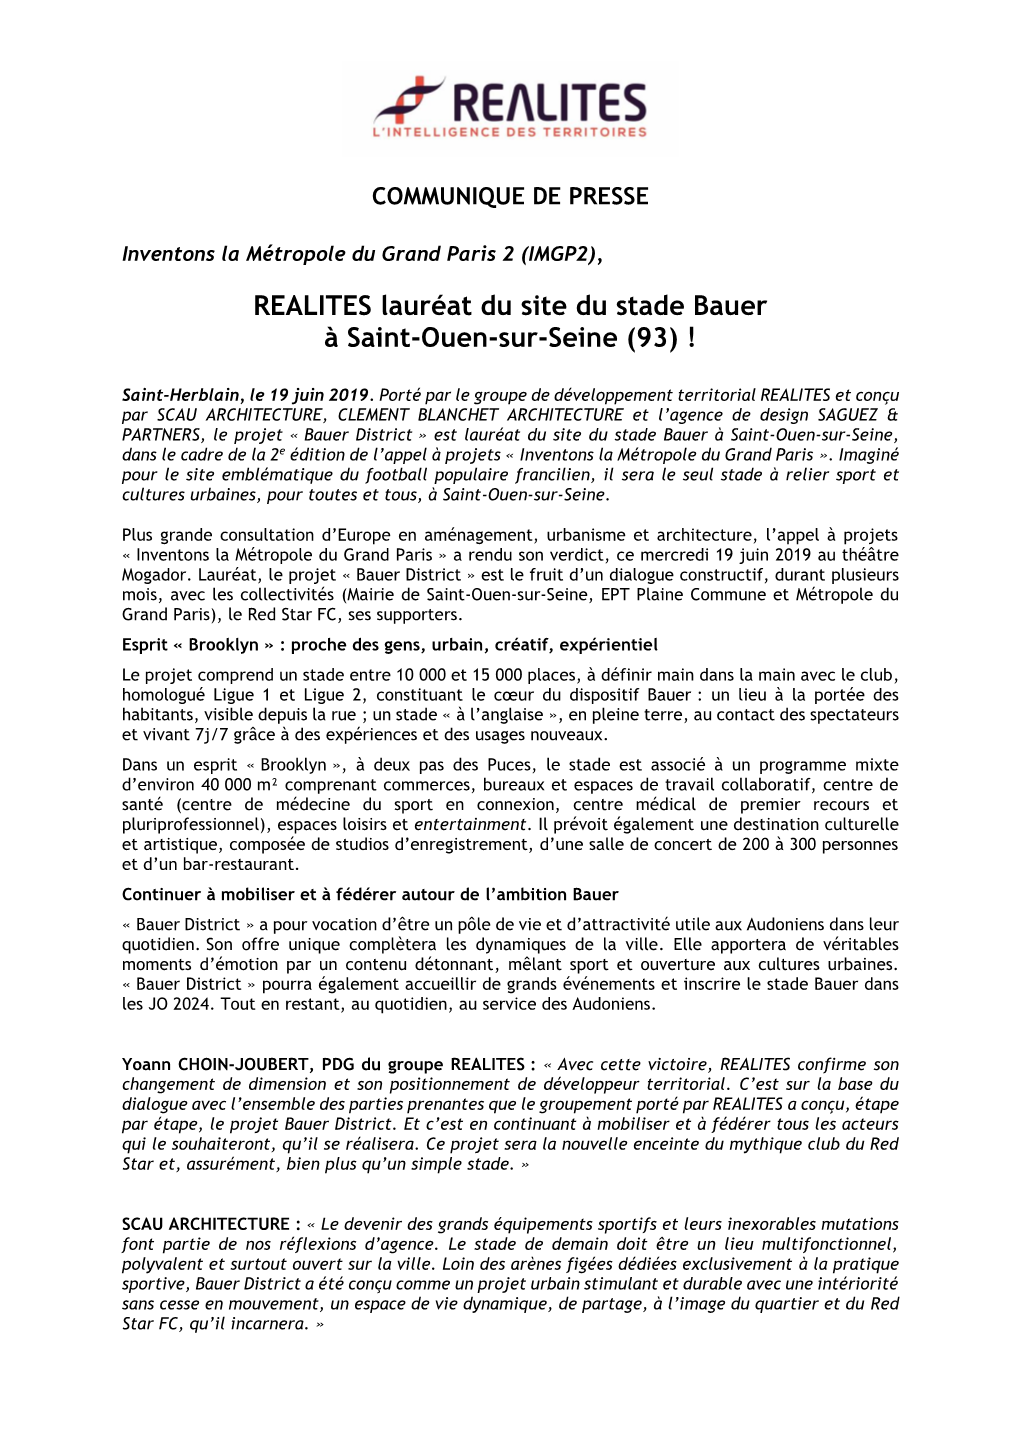 REALITES Lauréat Du Site Du Stade Bauer À Saint-Ouen-Sur-Seine (93) !